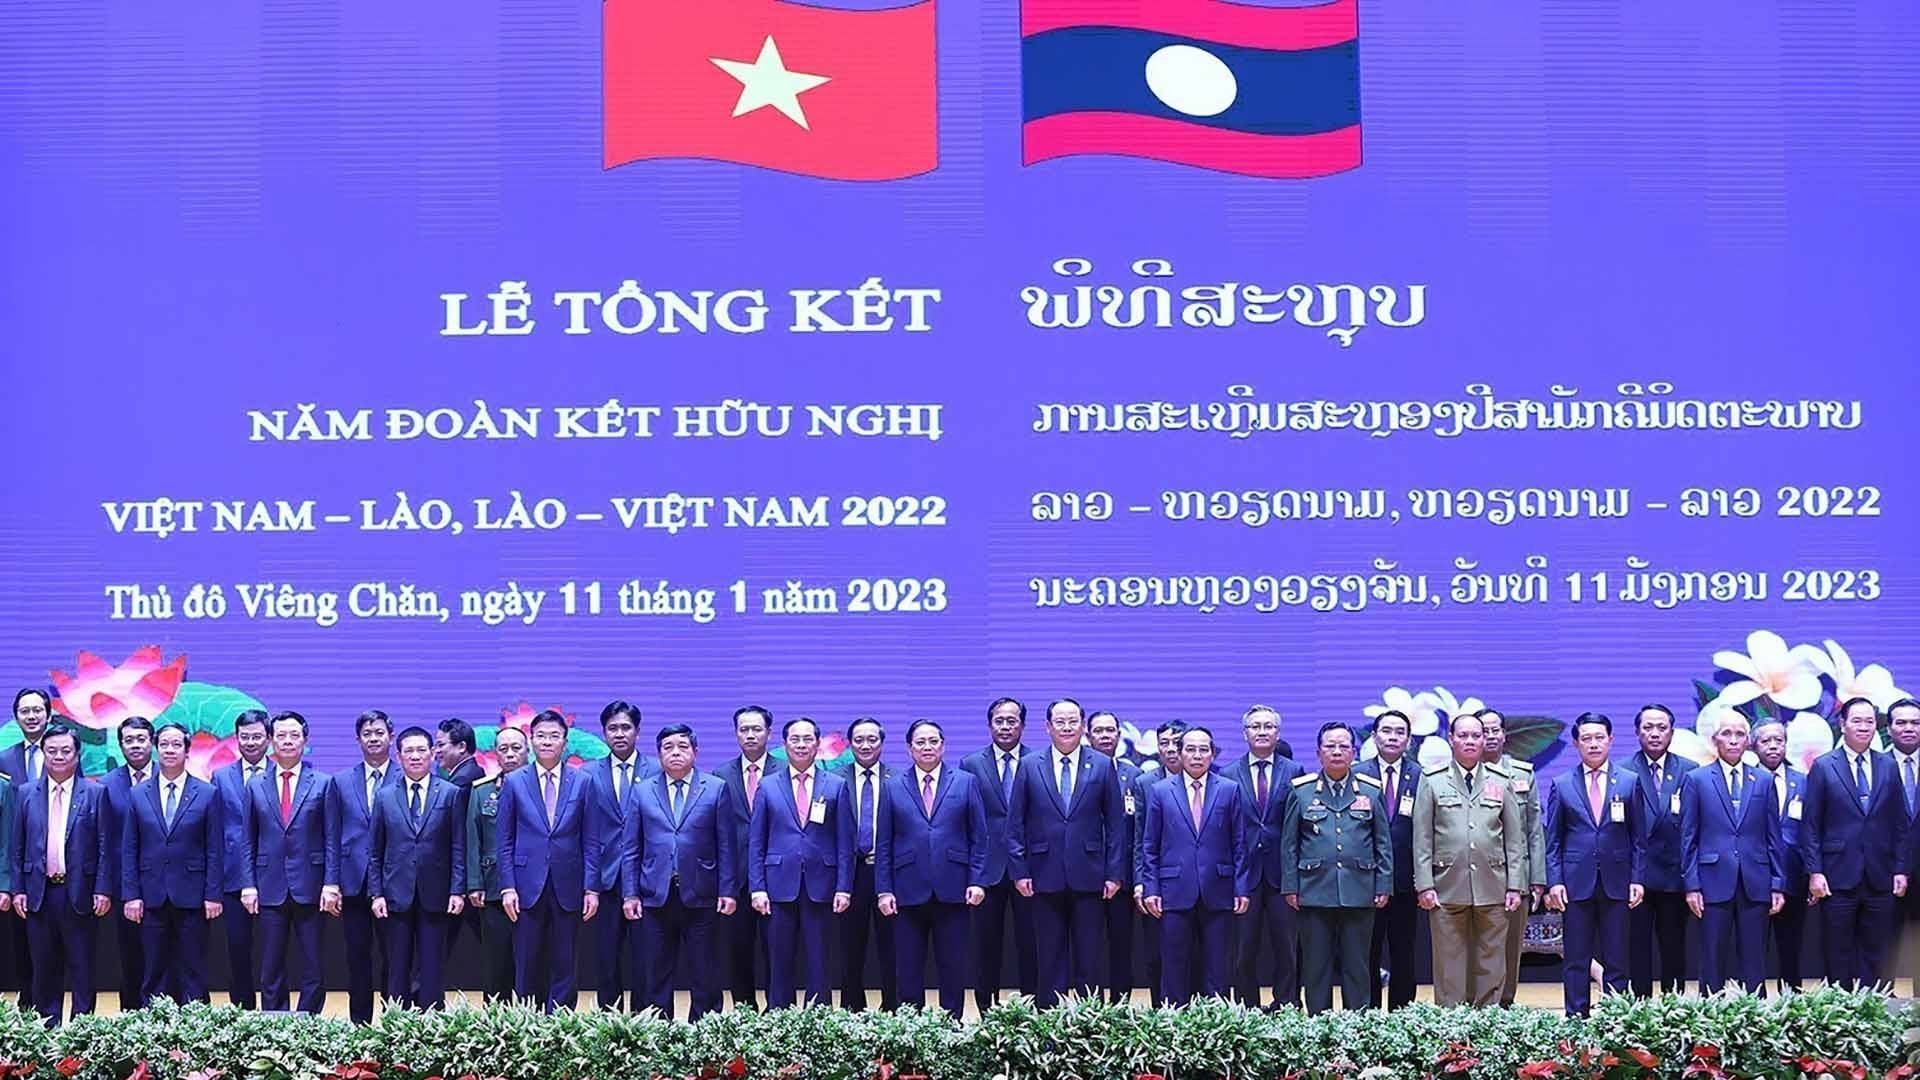 Tổng kết Năm đoàn kết hữu nghị Việt Nam-Lào, Lào-Việt Nam